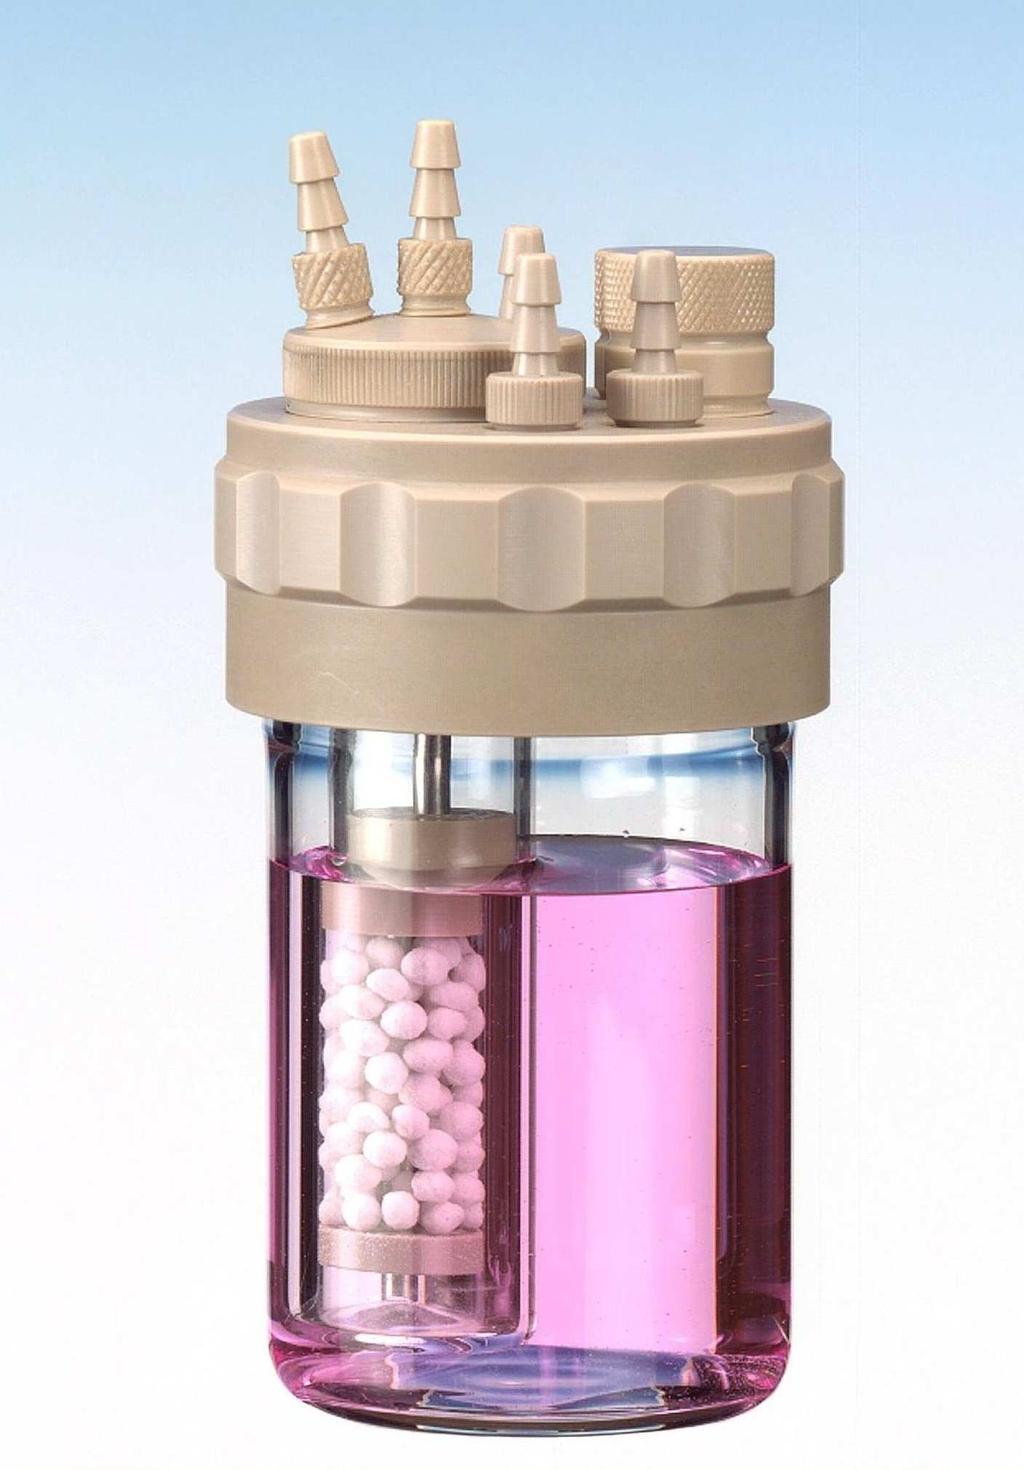 Das exklusive Fermenter System medorex-fementer zeigen eine hohe Modularität und sind leicht und komfortabel in Biotechnologie, Medizin und Pharmazie einsetzbar.